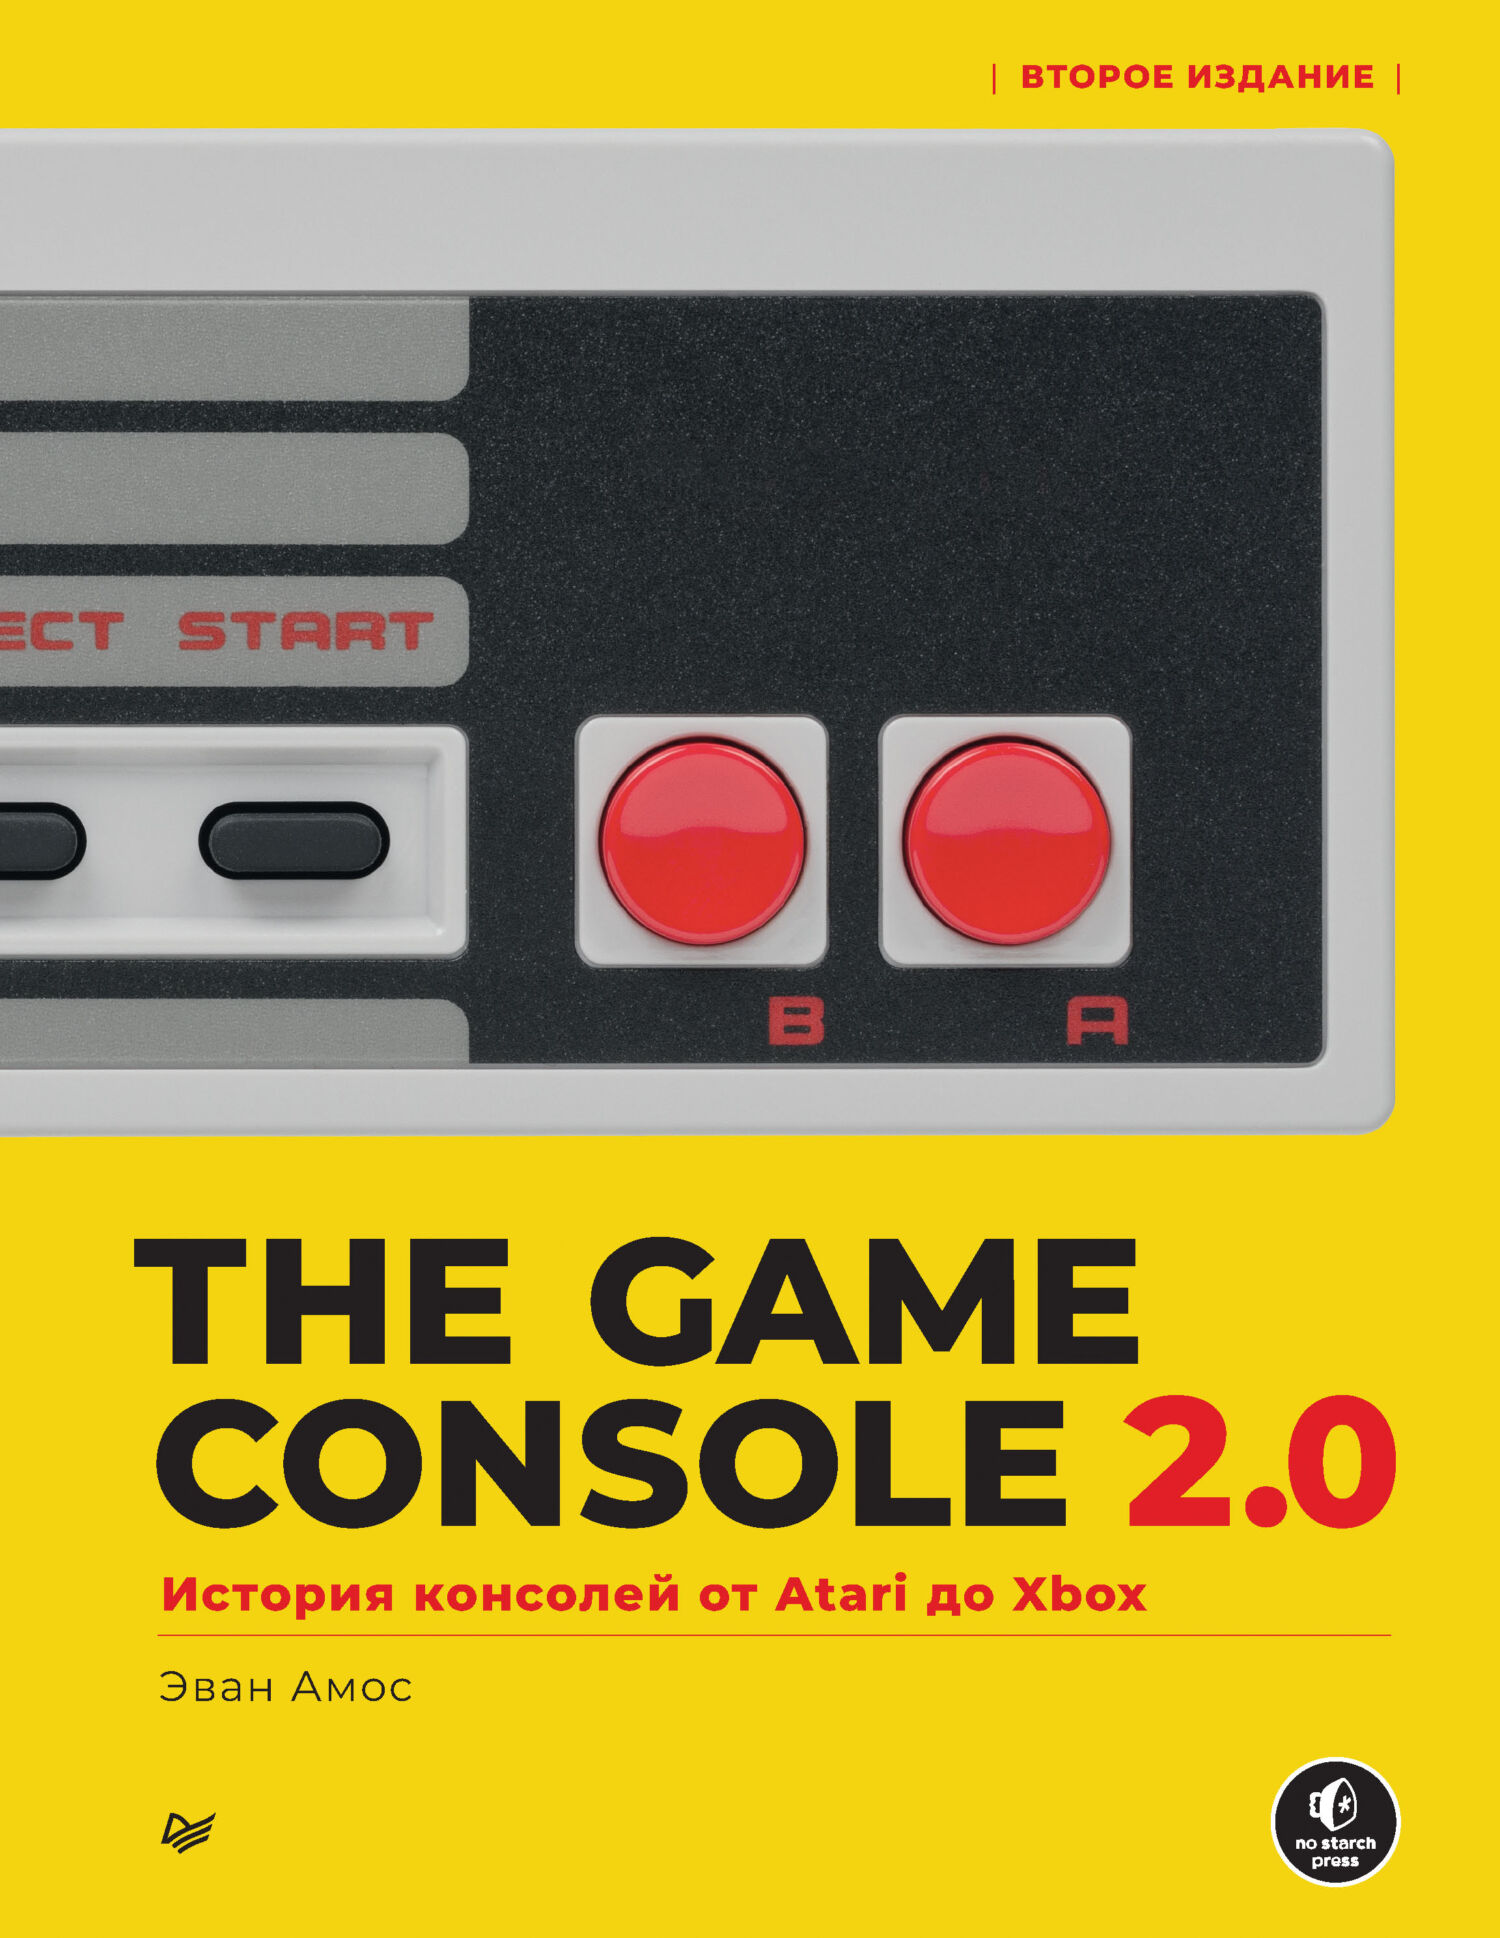 Книга  The Game Console 2.0. История консолей от Atari до Xbox созданная Эван Амос, Сергей Черников может относится к жанру зарубежная компьютерная литература, книги о компьютерах, компьютерное железо, научно-популярная литература. Стоимость электронной книги The Game Console 2.0. История консолей от Atari до Xbox с идентификатором 68332376 составляет 699.00 руб.